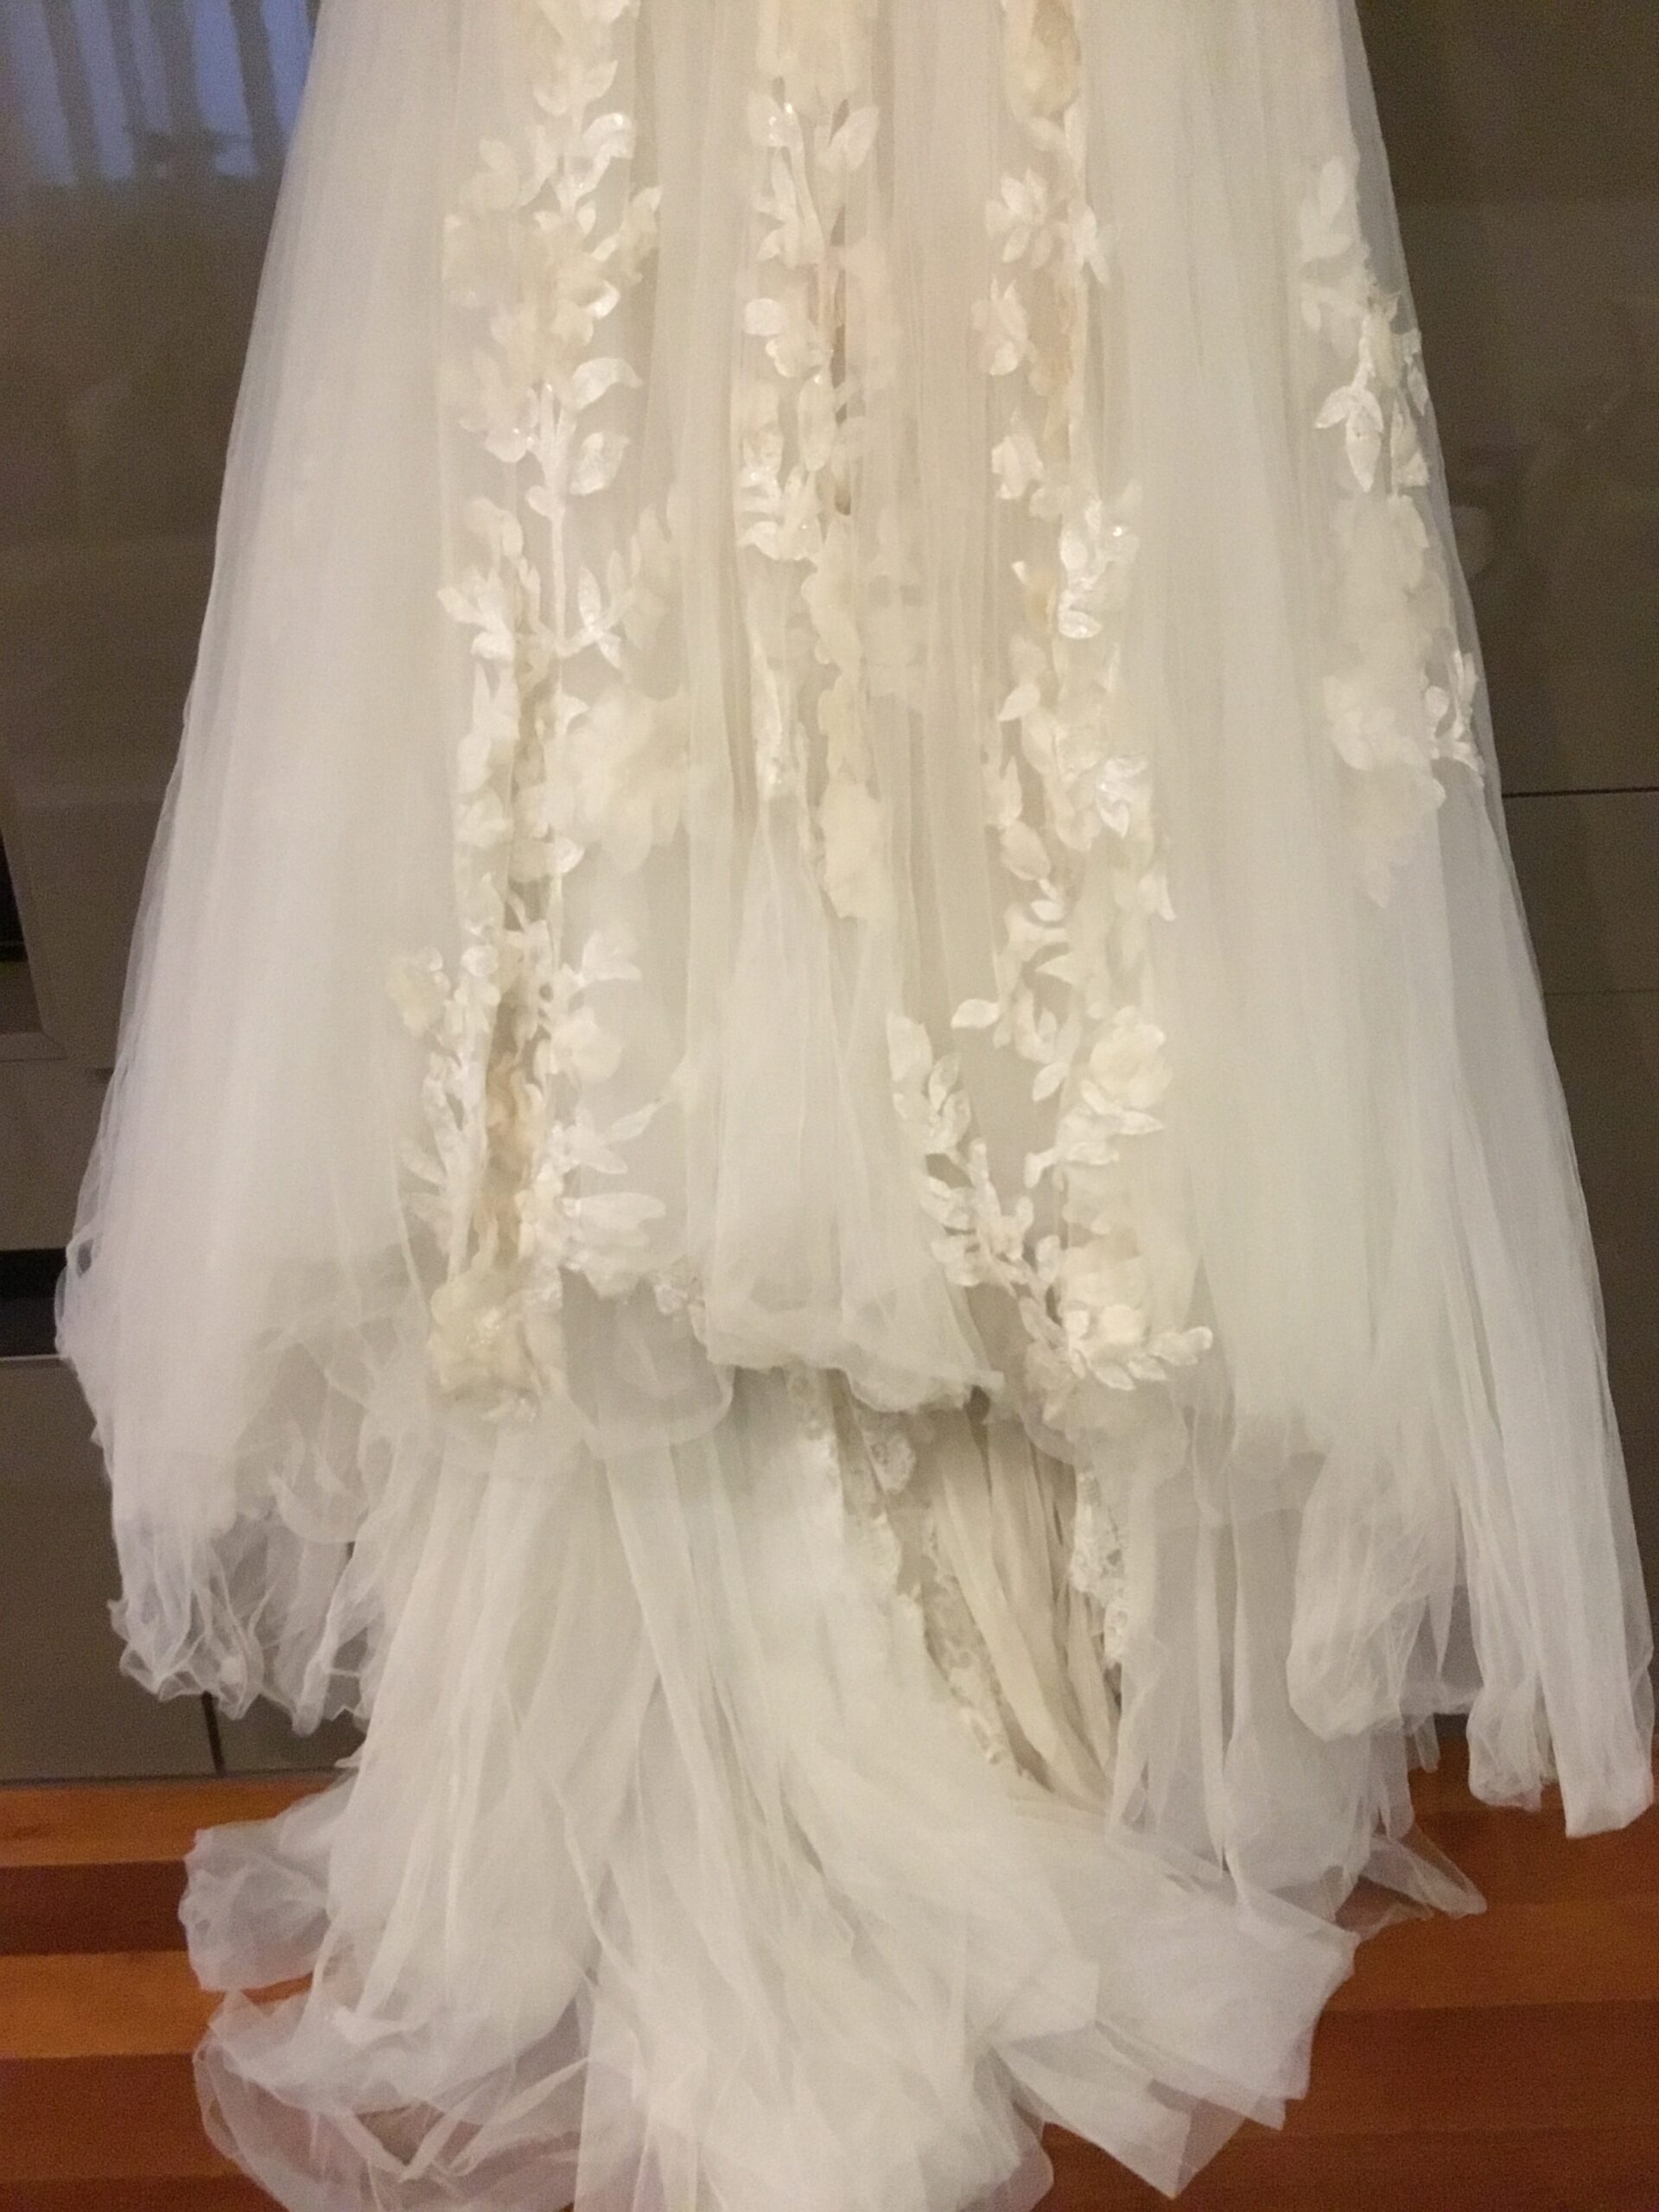 Vestido de noiva Elie Saab Aglaya Wedding Dress. Vestido de Noiva coleção Pronovias- modelo Aglaya Elie Saab 2011 7